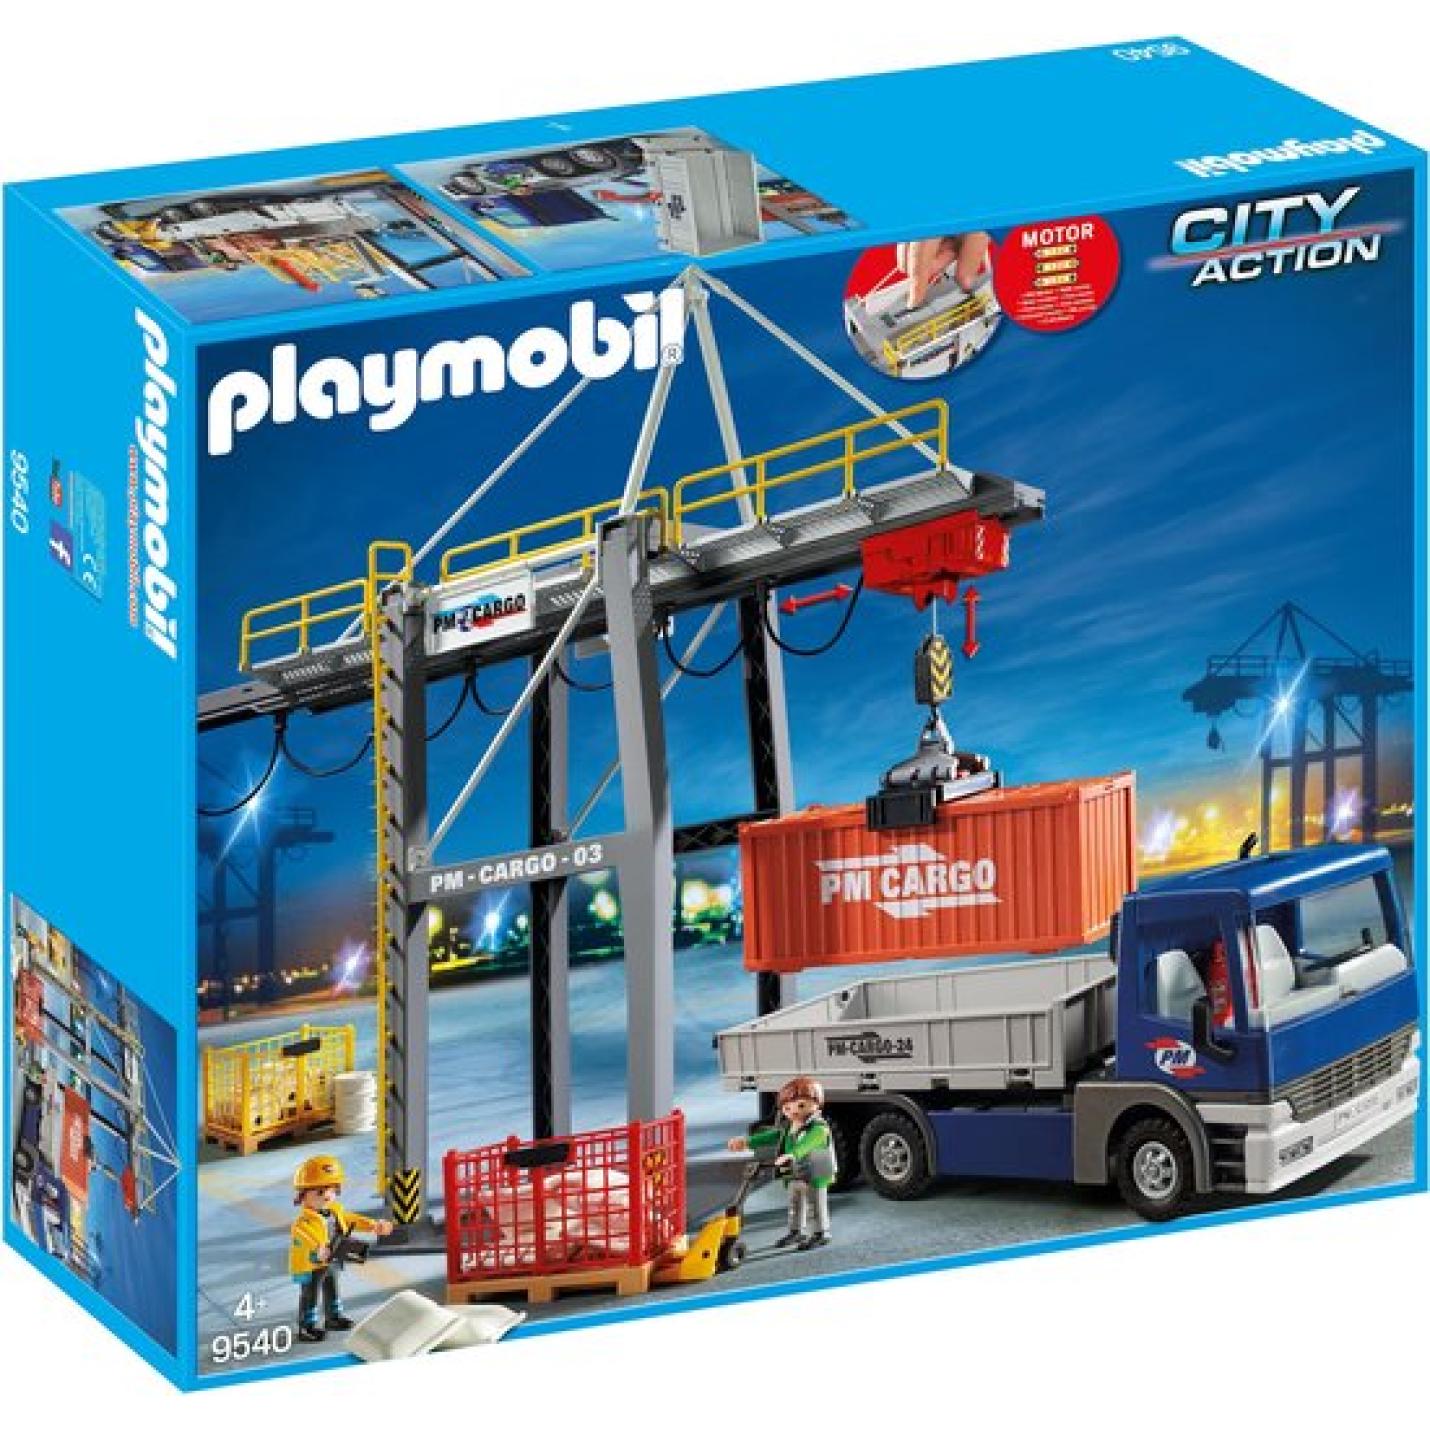 Playmobil nr. 9540 Elektrische Laadkade met Cargotruck